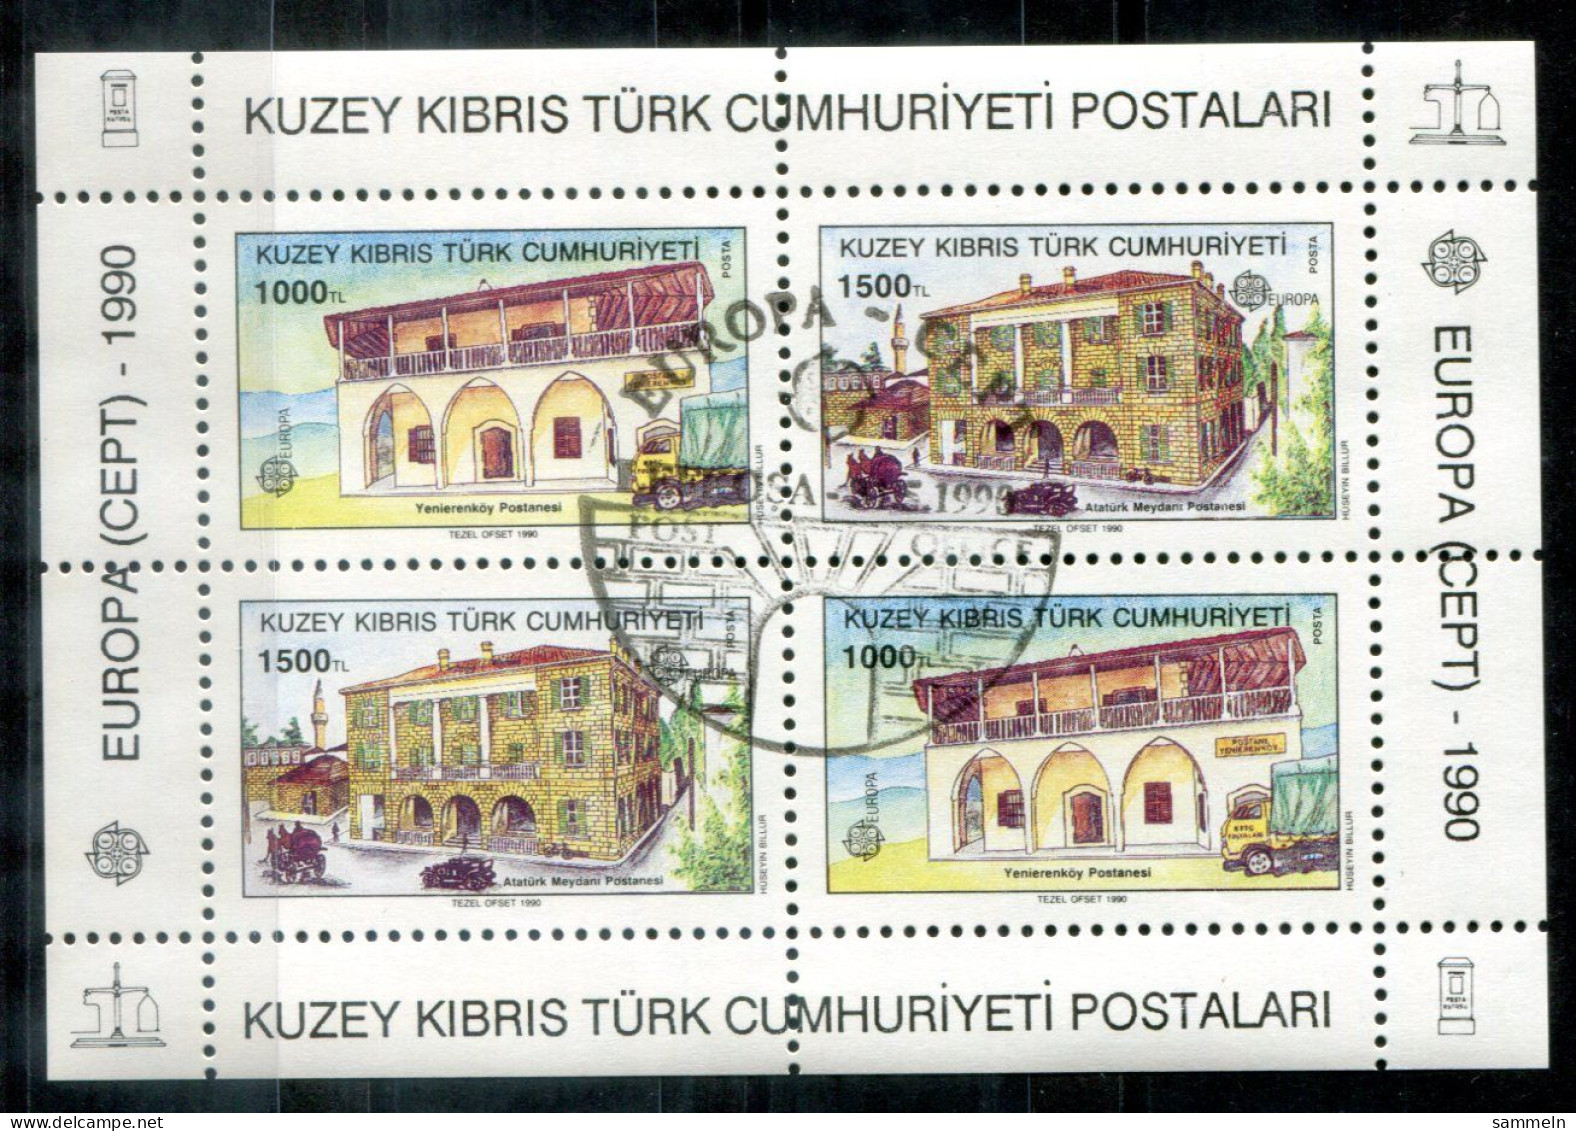 TÜRKISCH-ZYPERN Block 8, Bl.8 Canc. - Europa CEPT 1990 - TURKISH CYPRUS / CHYPRE TURQUE - Oblitérés